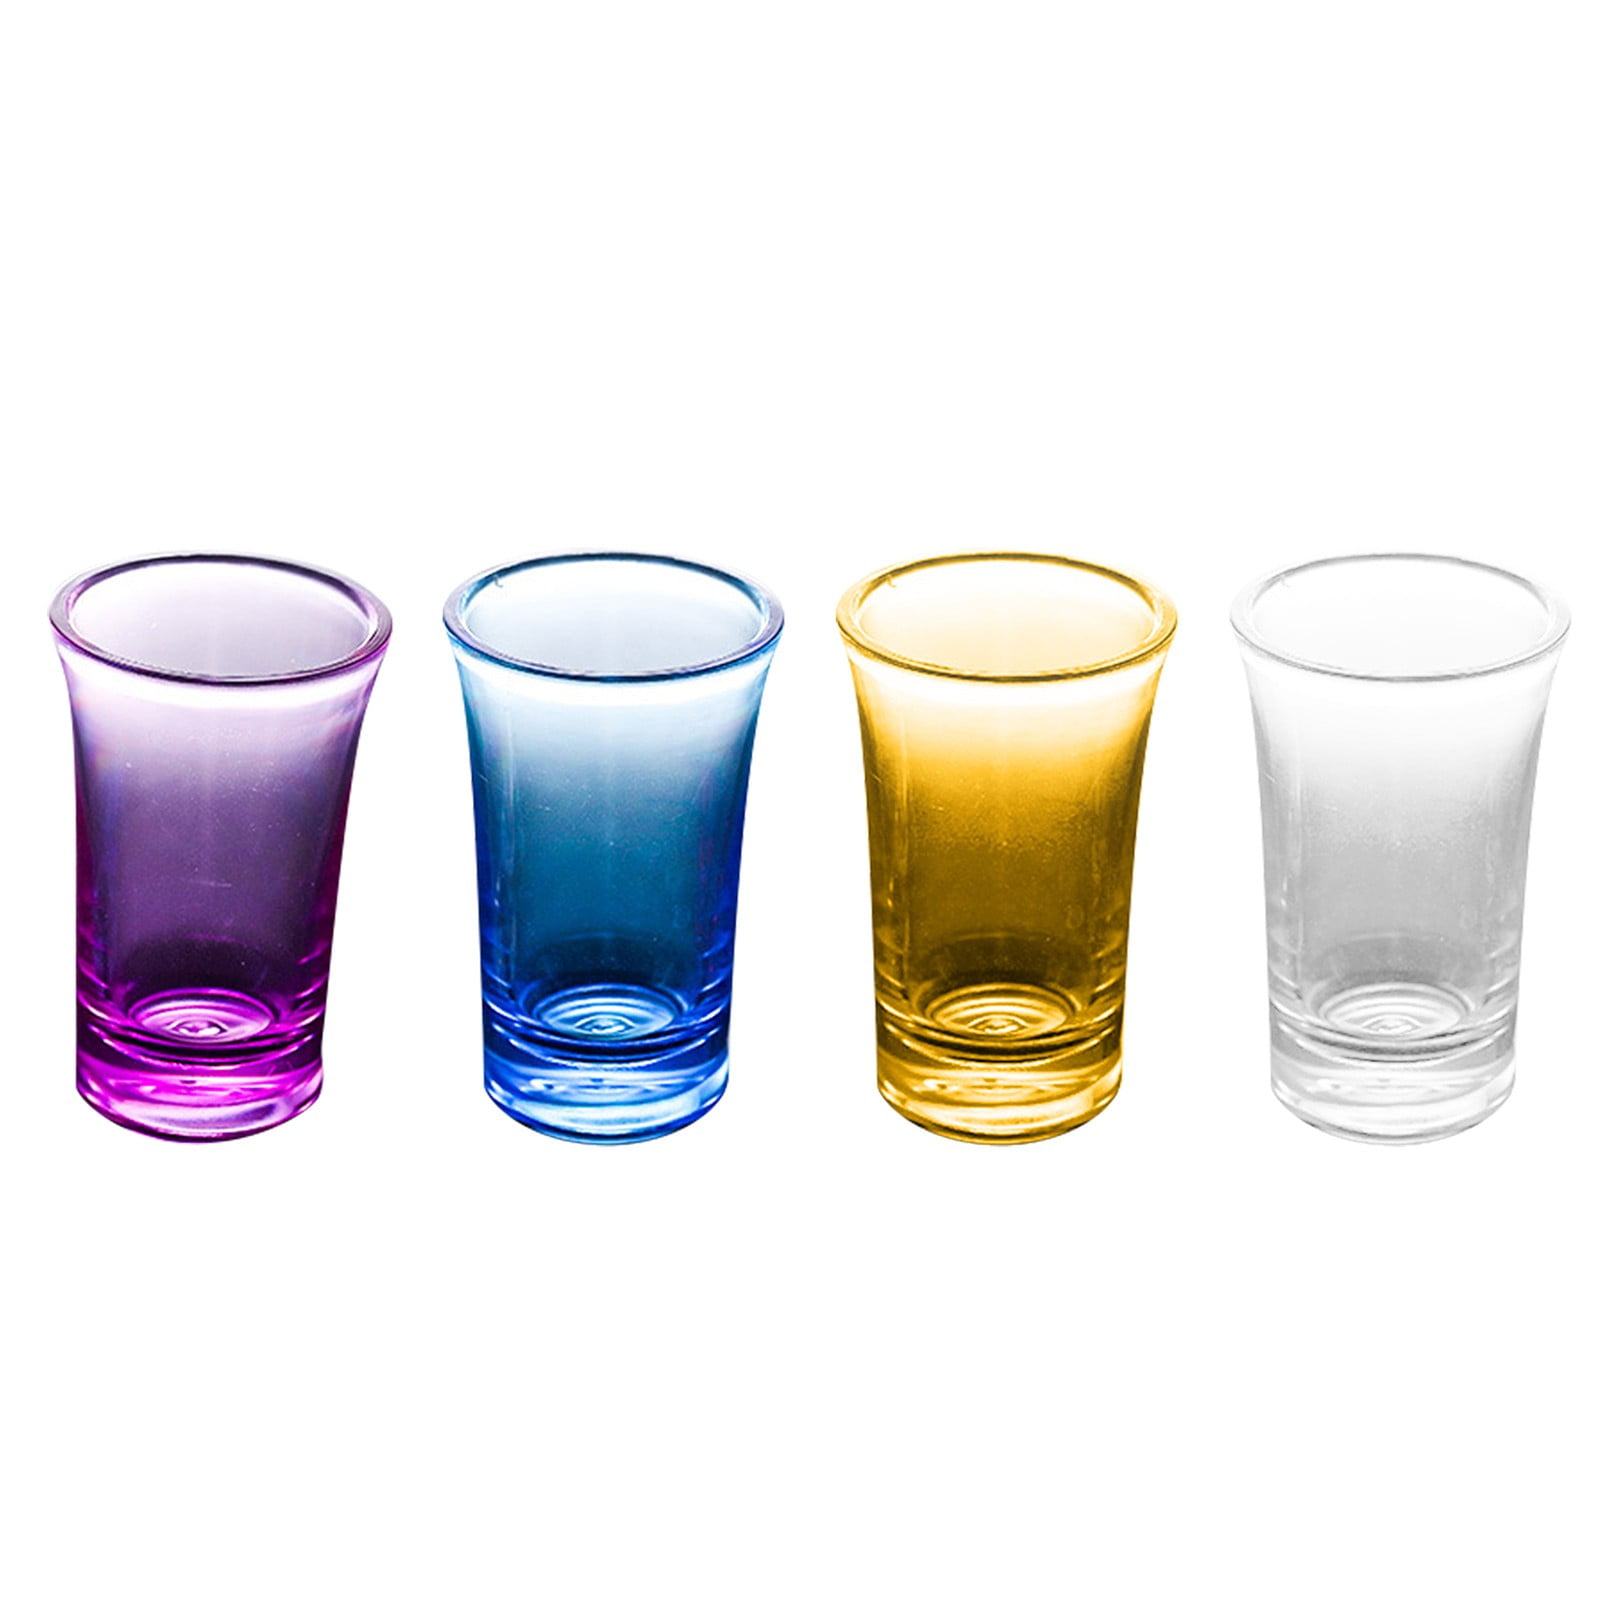 KX-WARE Classic Acrylic All-Purpose Wine Glasses, 19-ounce Plastic Stem  Wine Glasses, set of 6 Multicolor